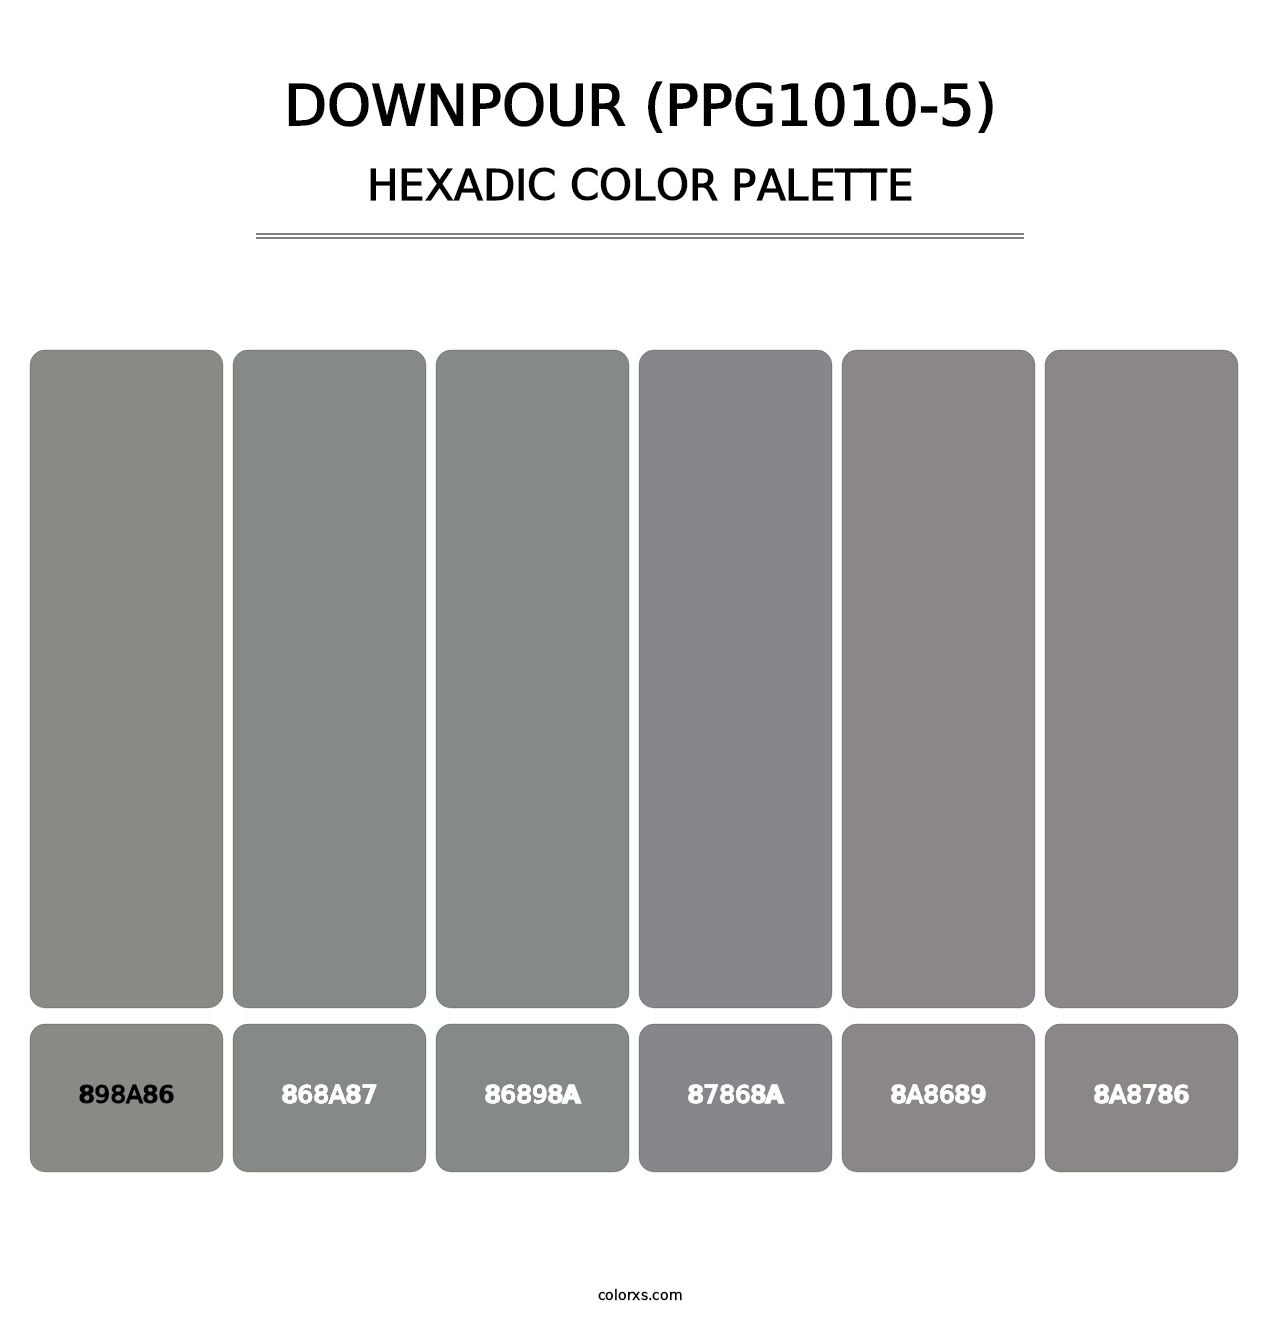 Downpour (PPG1010-5) - Hexadic Color Palette